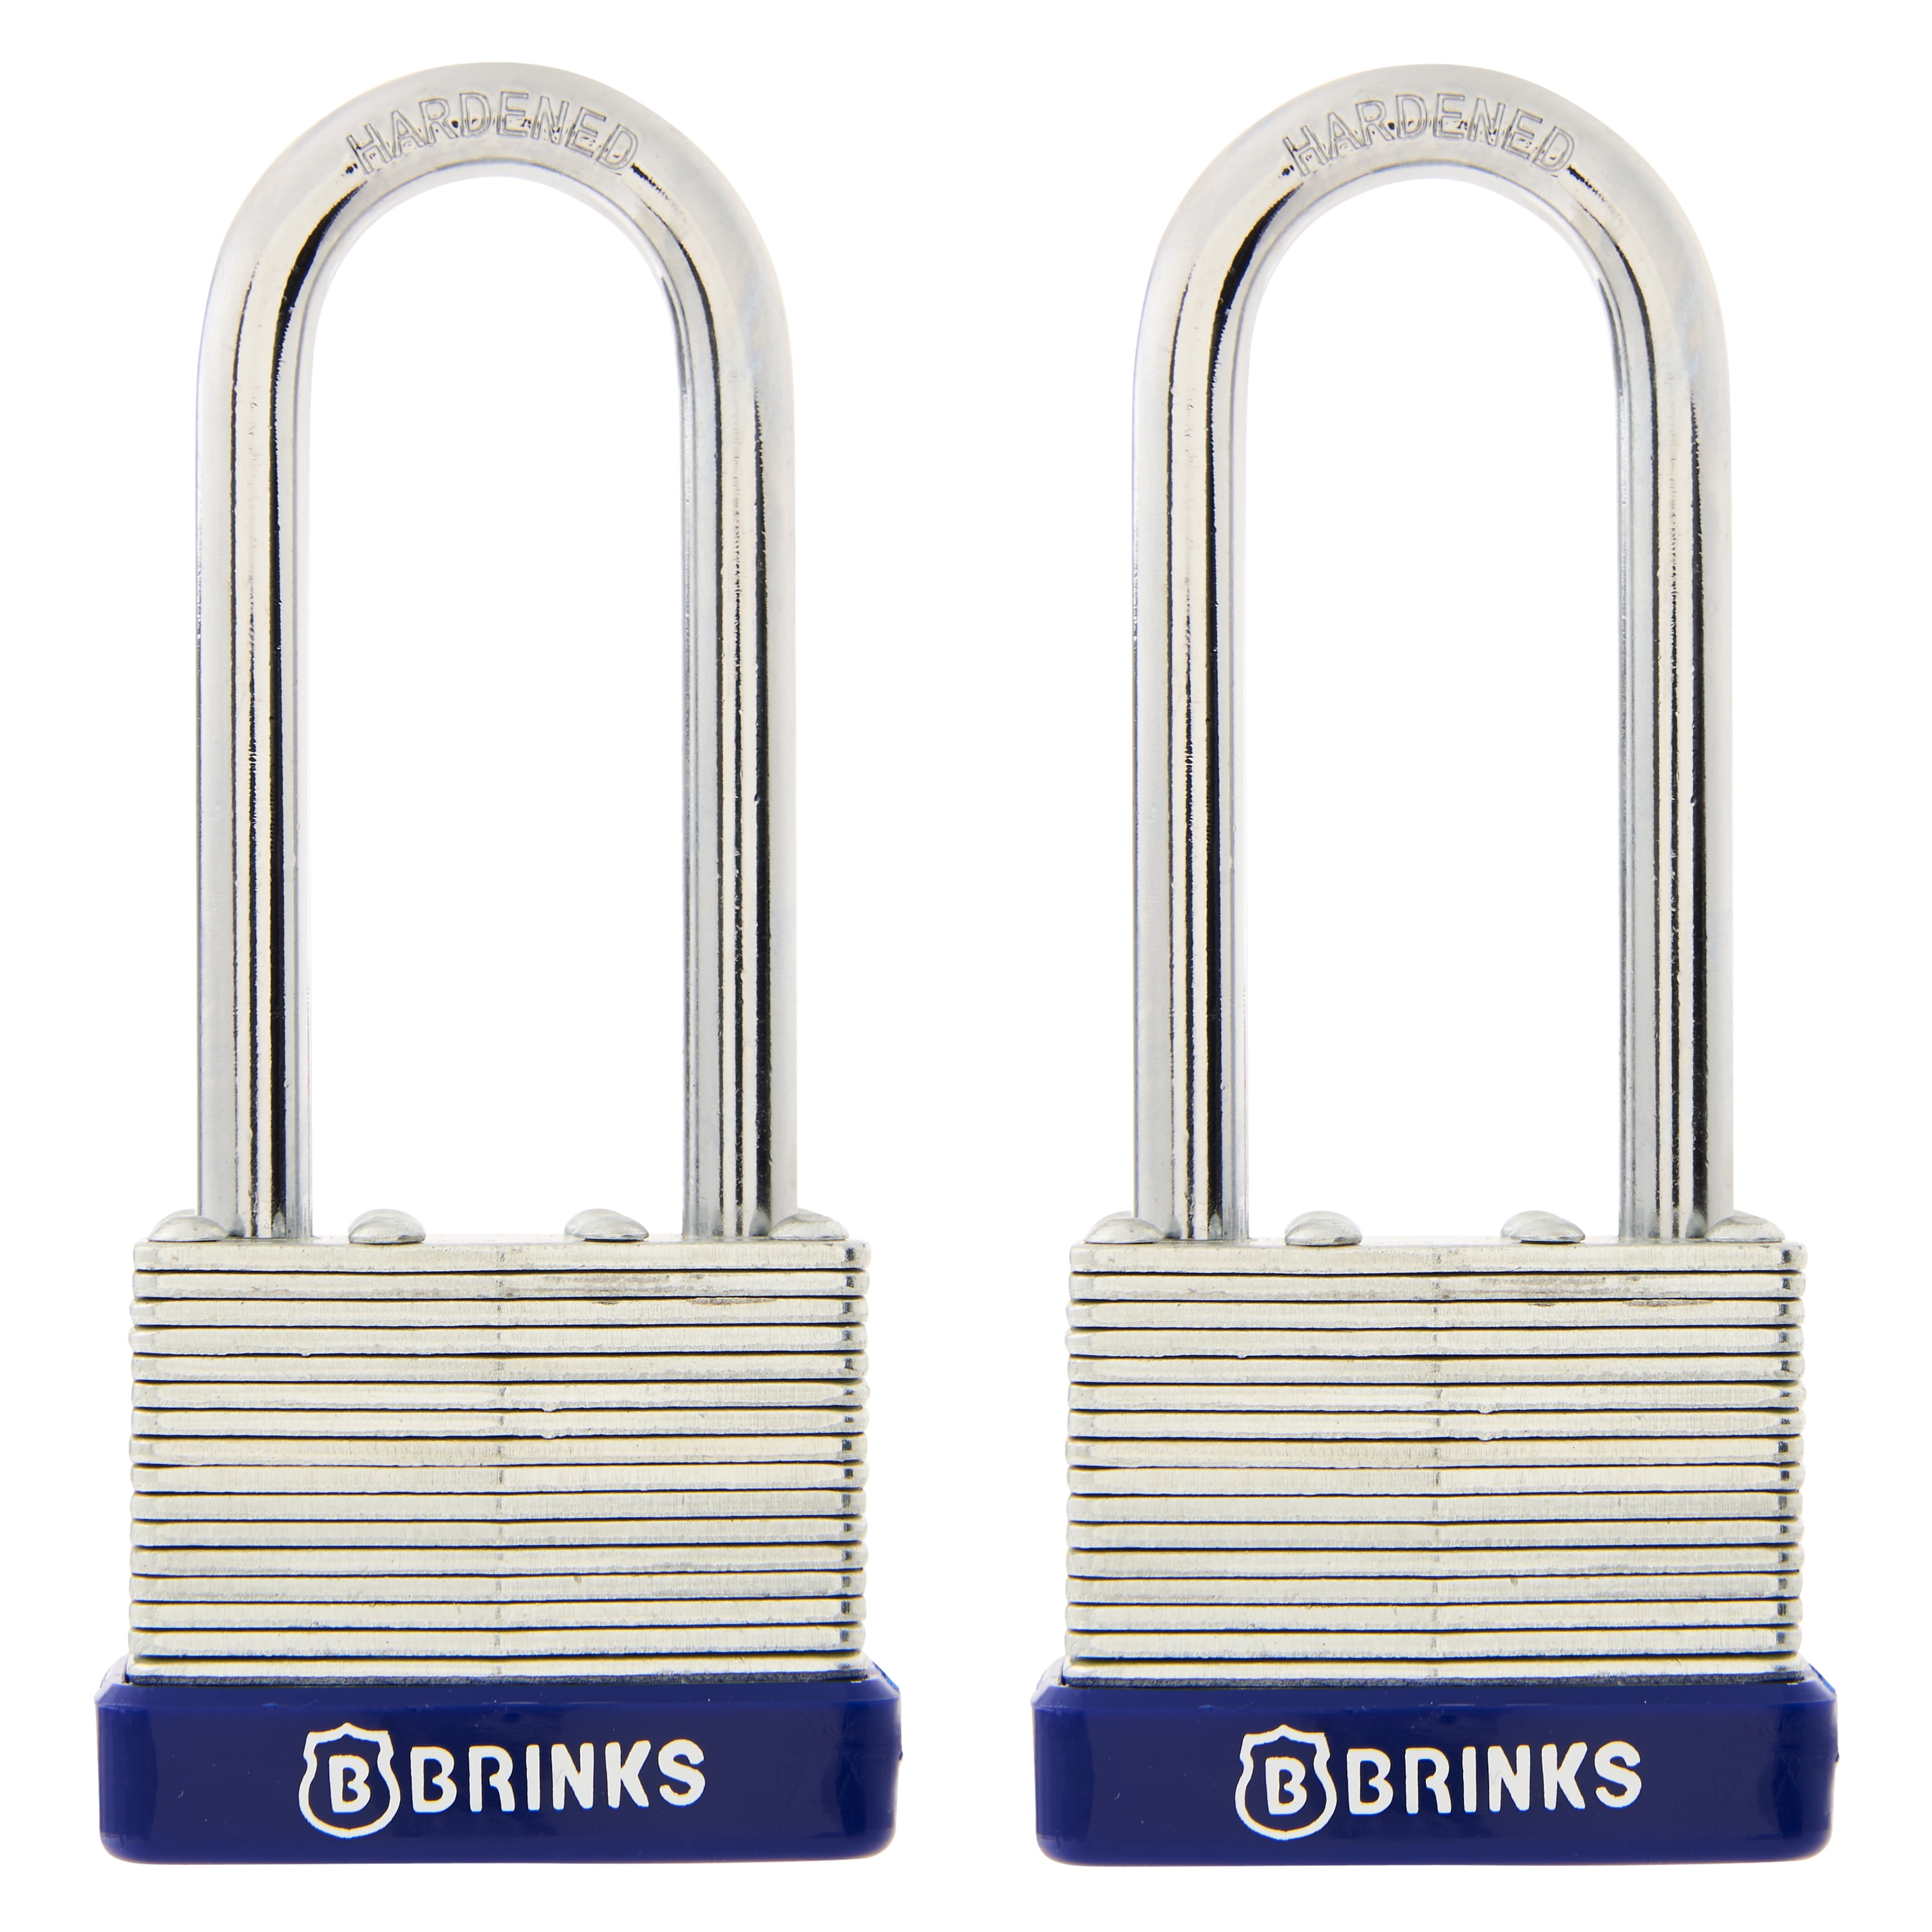 4 Keyed Alike 40mm Water Resistant Waterproof Padlocks 4 Locks 8 Keys 4 for sale online 